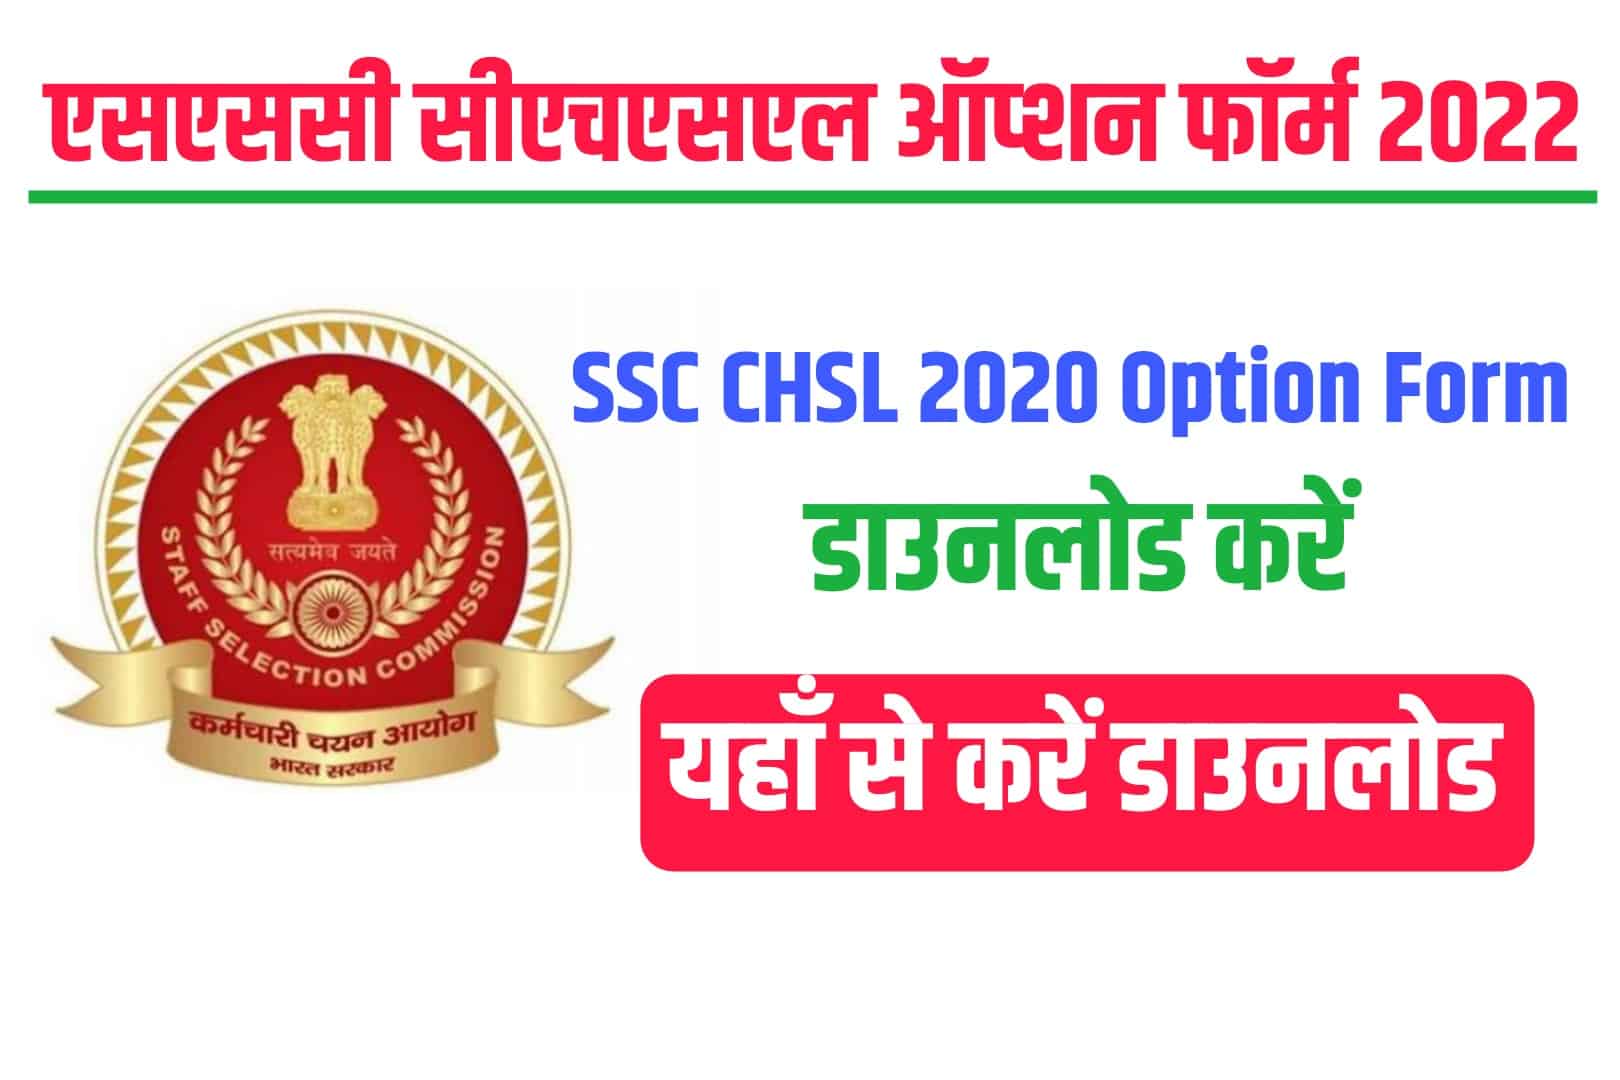 SSC CHSL 2020 Option Form 2022 | एसएससी सीएचएसएल ऑप्शन फॉर्म 2022